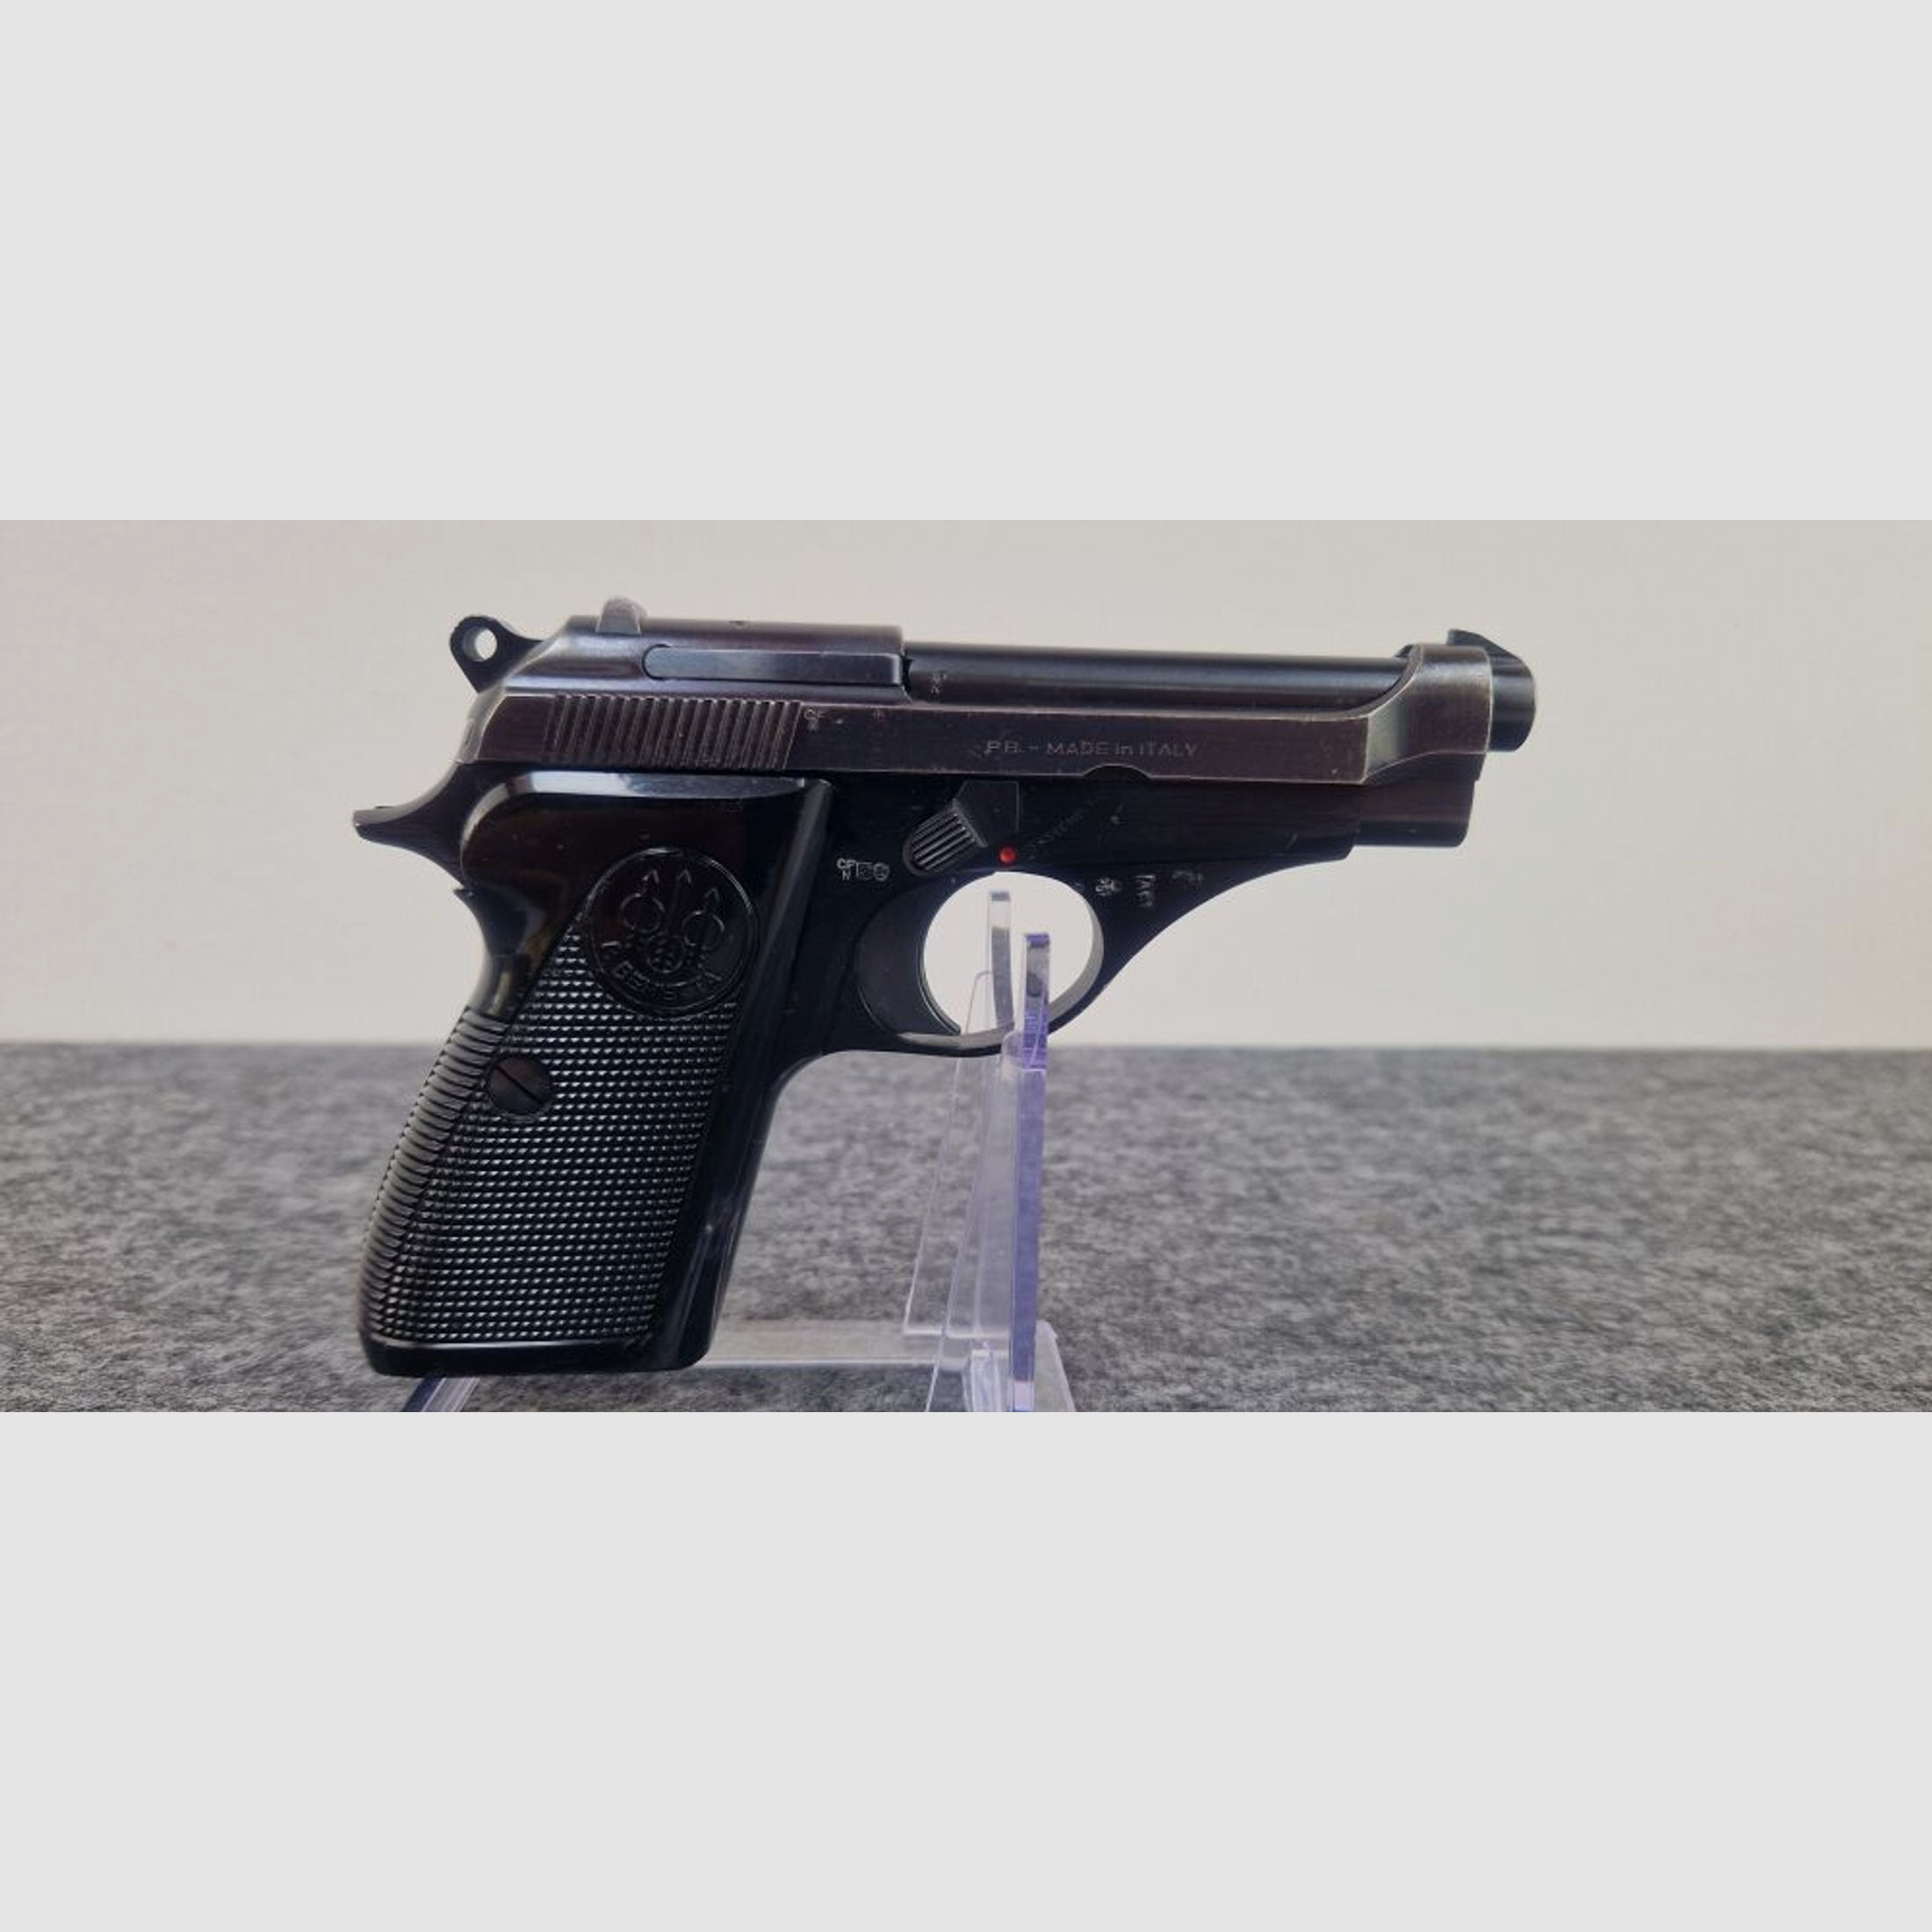 Beretta	 Pistole Beretta M-70/71 - .22 lfb